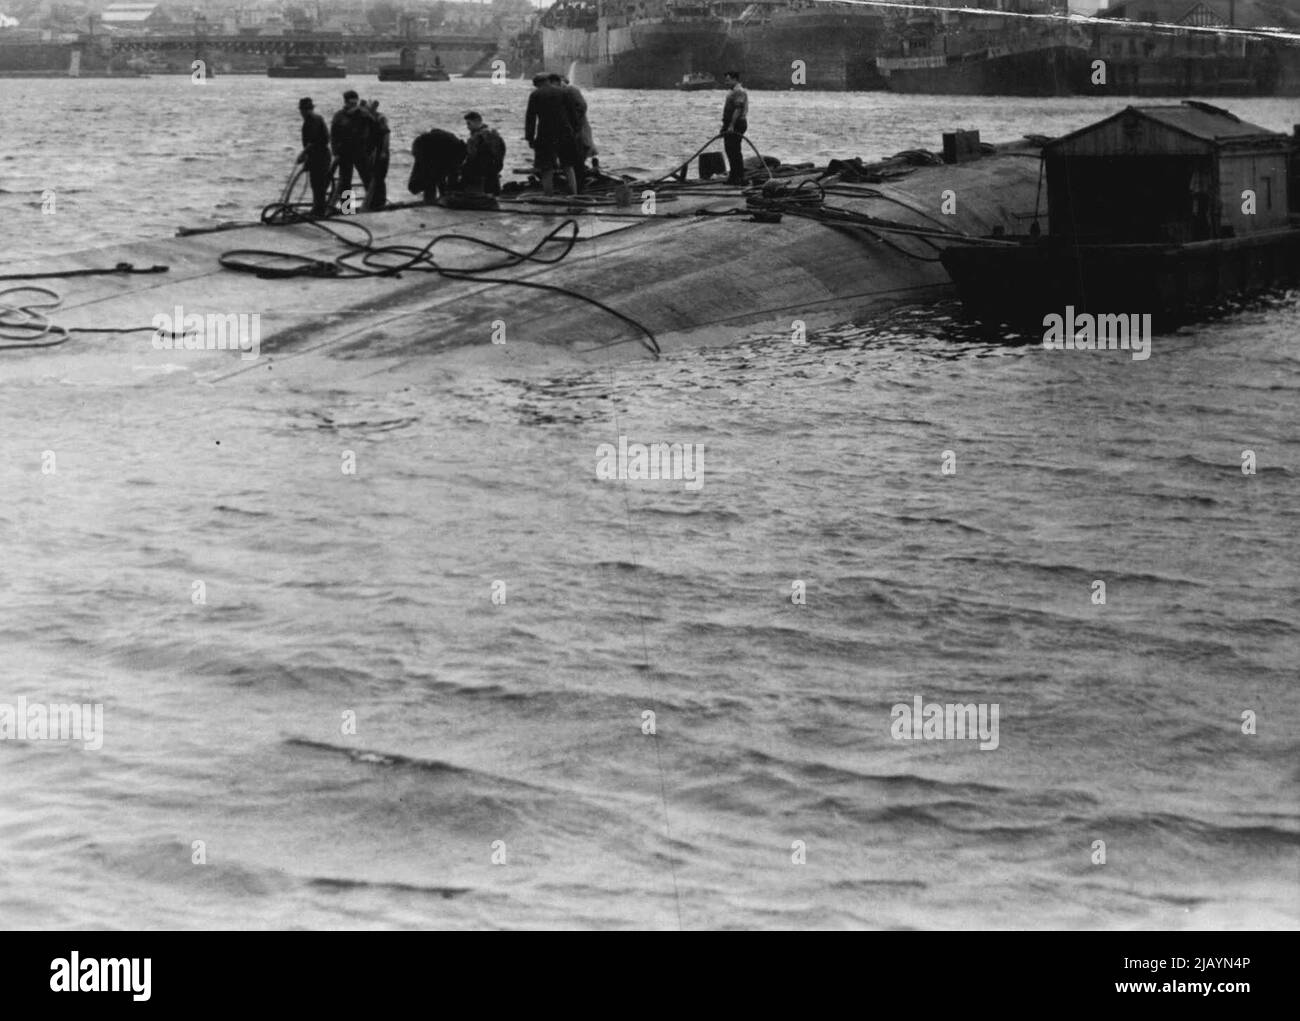 Der Frachter, der nach einem verheerenden Brand in einem australischen Hafen an einer Anlegestelle sank, wurde nun angehoben und ins seichte Wasser geschleppt. Bei Flut zeigen sich der Kiel und ein Teil des Rumpfes des Frachters über dem Wasser. Sie sieht aus wie ein teilweise versunkenen Wal. Das Schiff wird nicht mehr auf See gehen. Ihre Motoren werden entfernt und der Rumpf zerbrochen. 27. Juli 1942. (Foto von Adams/Fairfax Media). Stockfoto